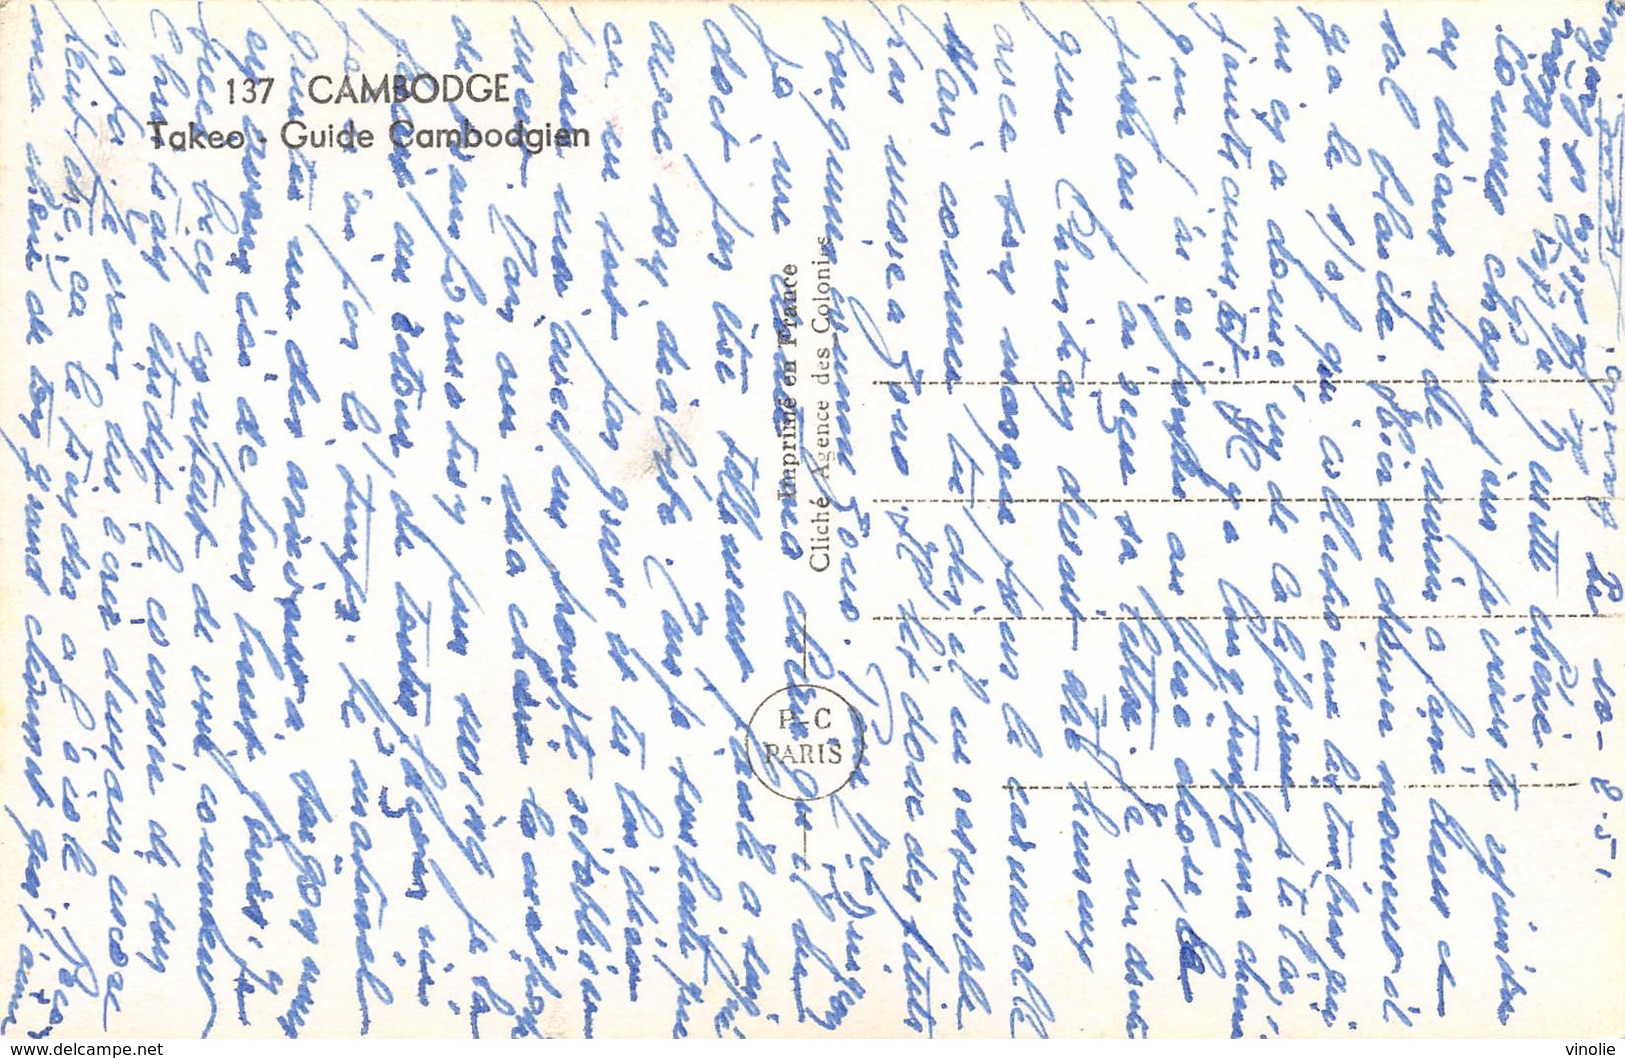 P-T2-18-5647 : CAMBODGE.  TAKEO. GUIDE CAMBODGIEN - Cambodge